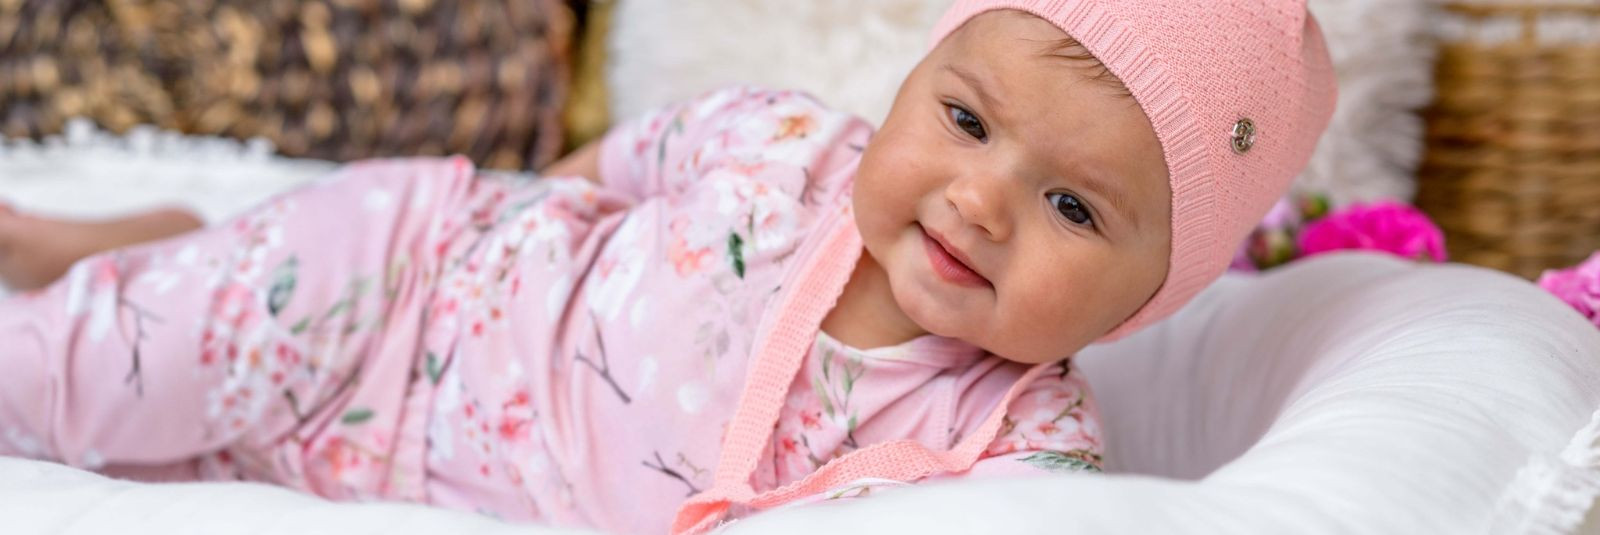 Kui tegemist on sinu beebi riietuse valikuga, on oluline leida tasakaal stiili, mugavuse ja praktilisuse vahel. Bambuskangas on see salapärane materjal, mis ühe